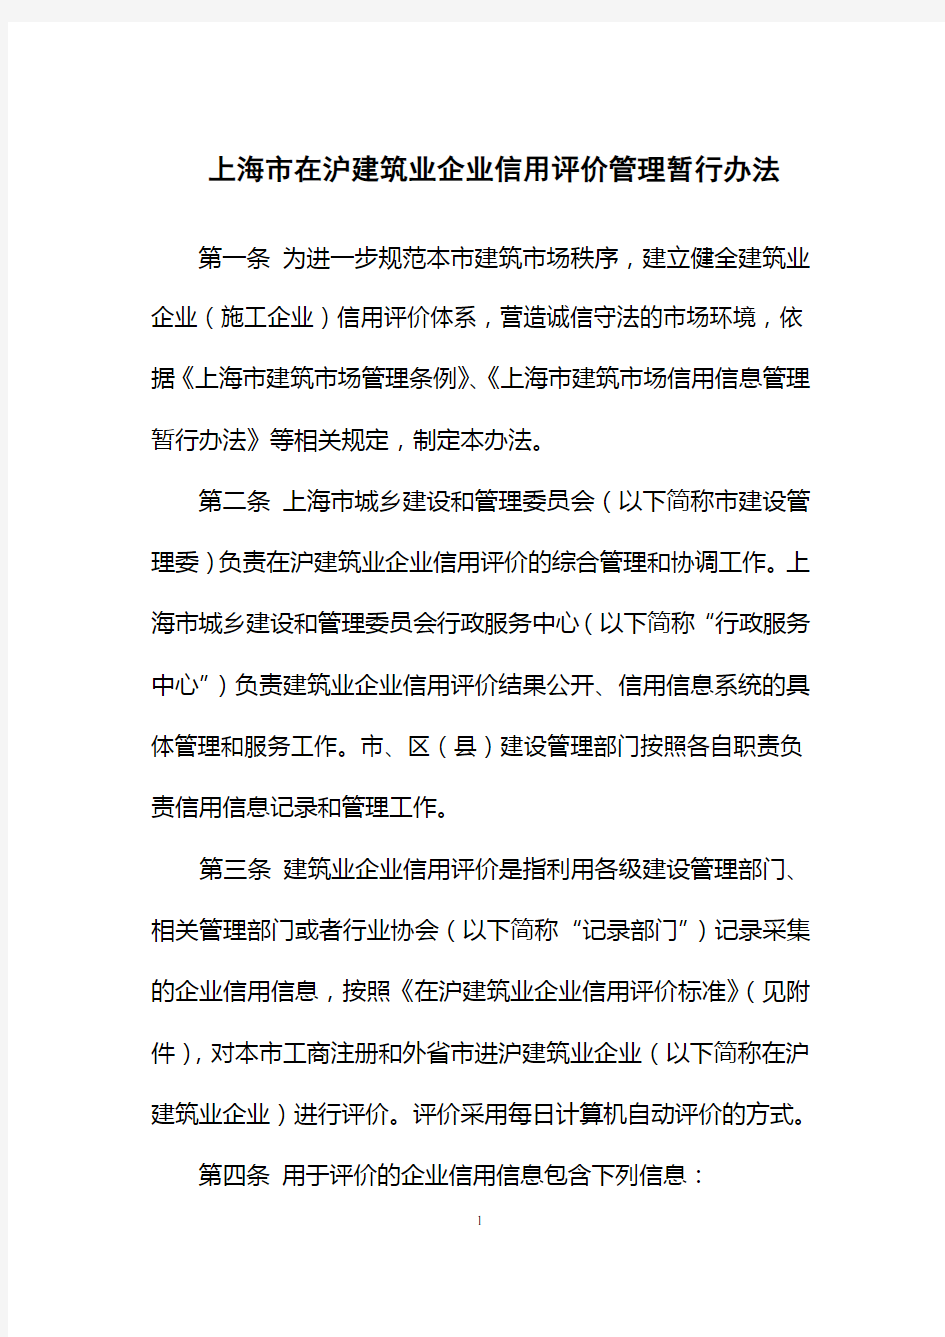 上海在沪建筑业企业信用评价管理暂行办法